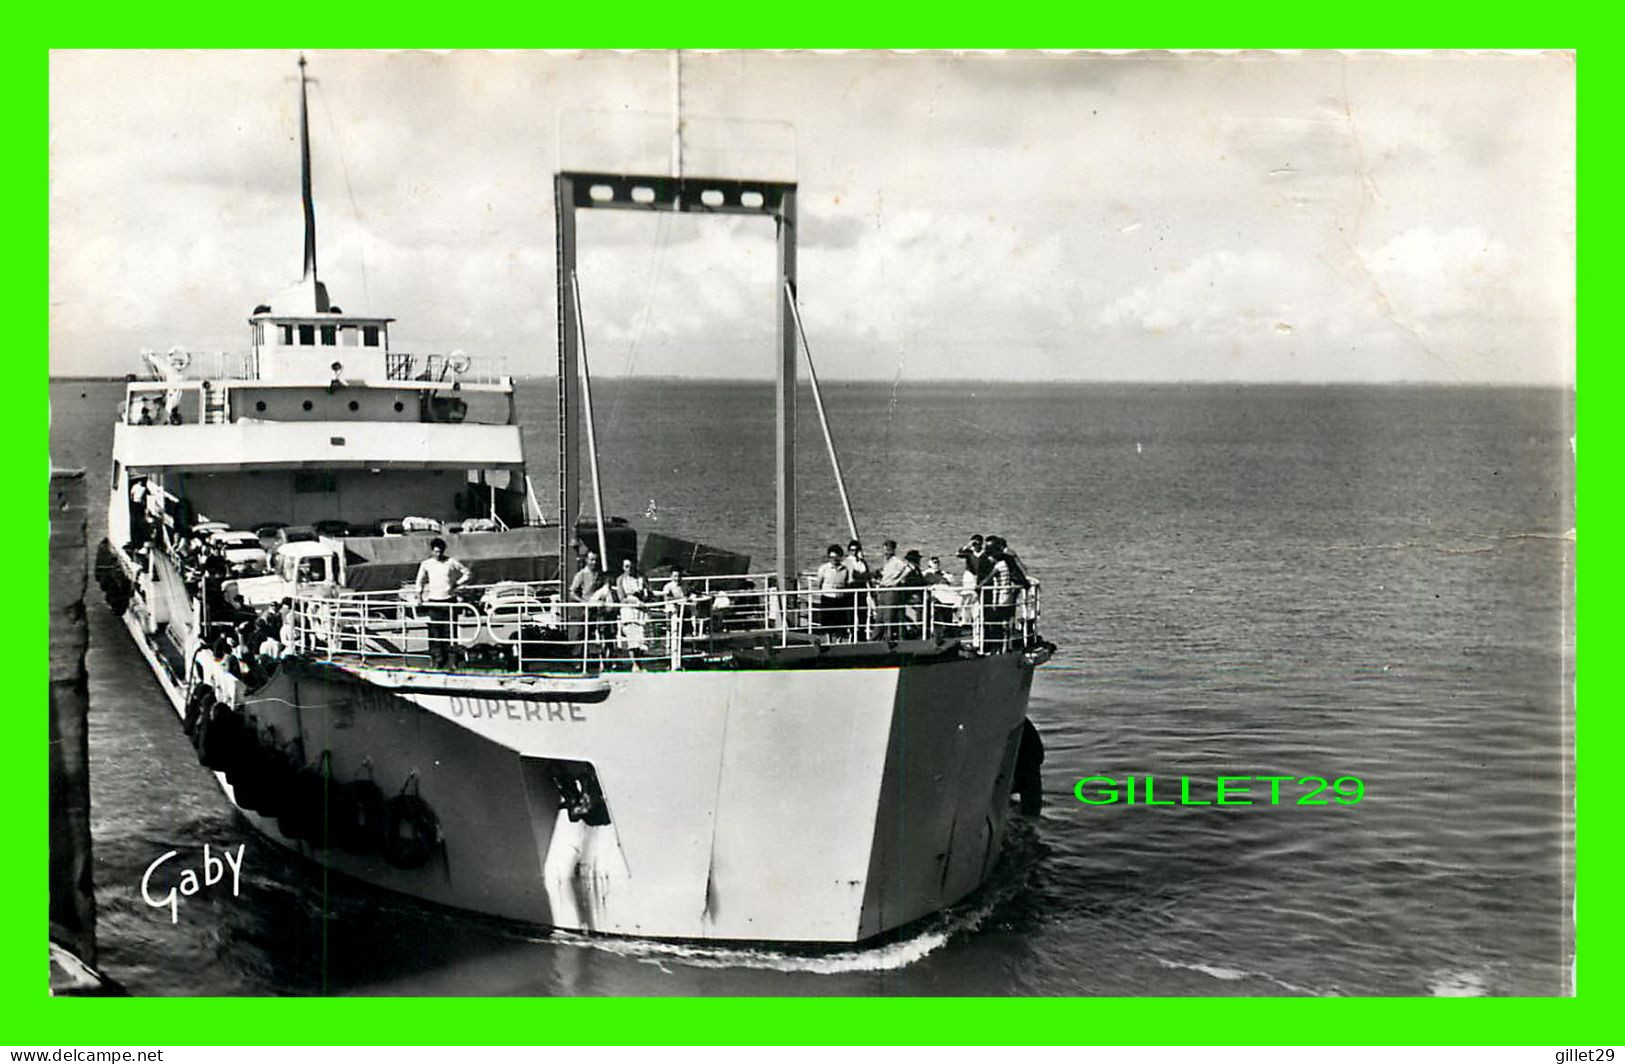 SHIP, BATEAU - " AMIRAL DUPERRE " - LE BAC - ILE DE RE (17) - CIRCULÉE EN 1961 -  EDITIONS GABY - ARTAUD PÈRE ET FILS - - Commercio